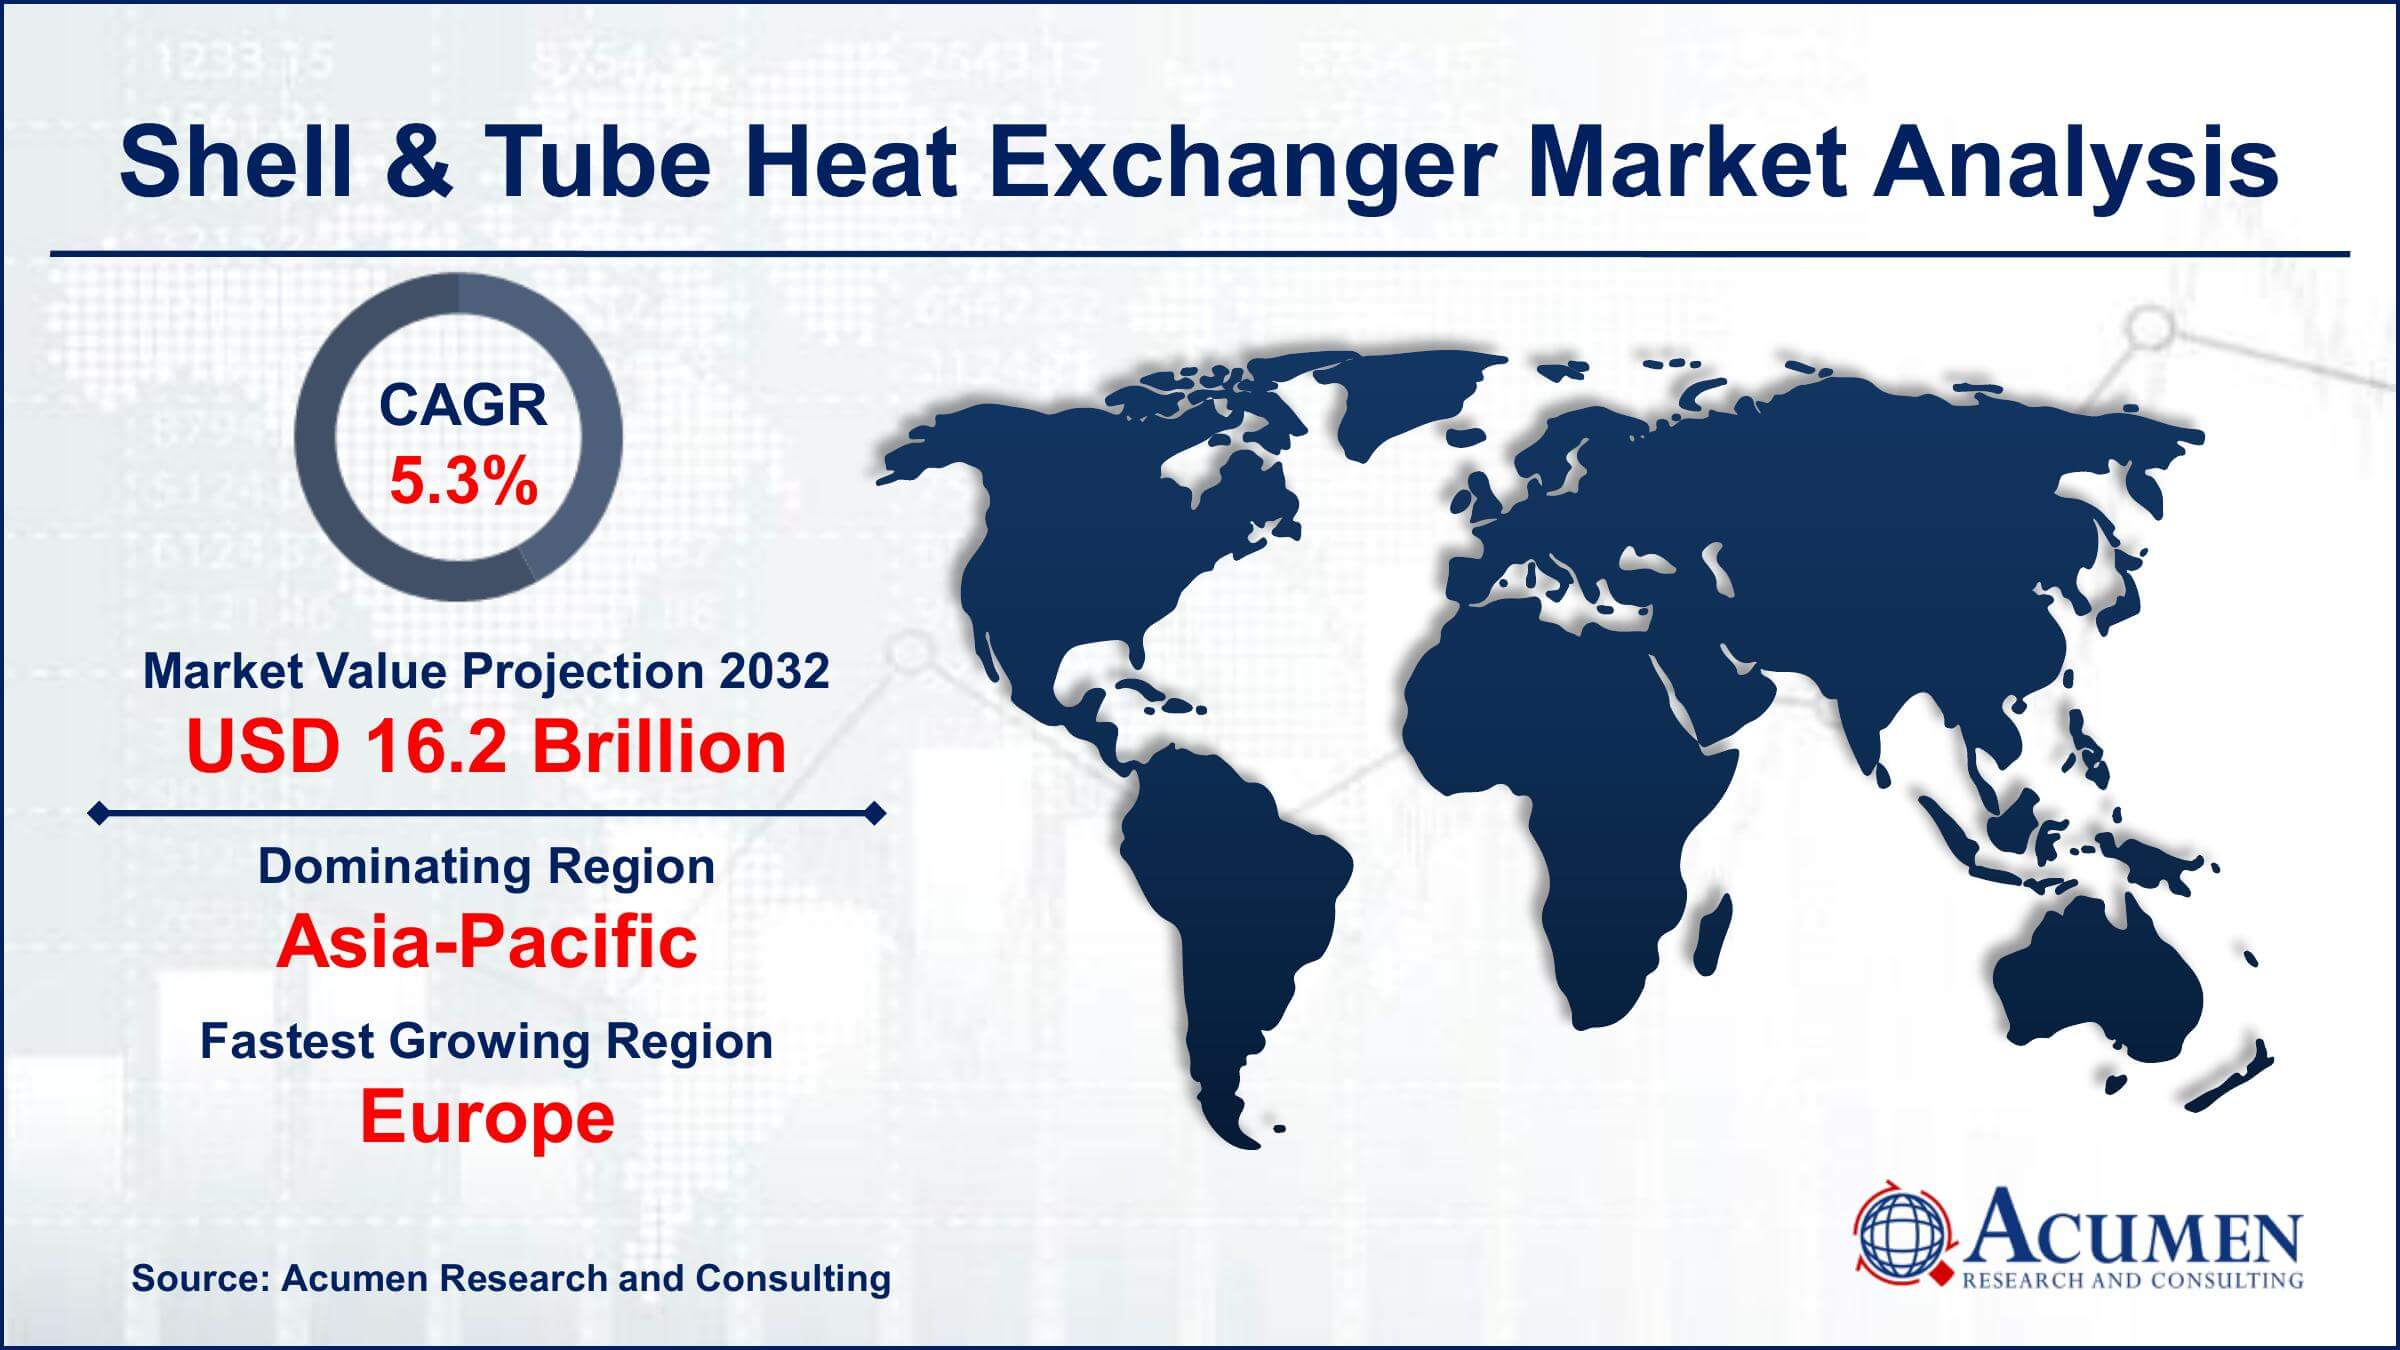 Global Shell & Tube Heat Exchanger Market Trends